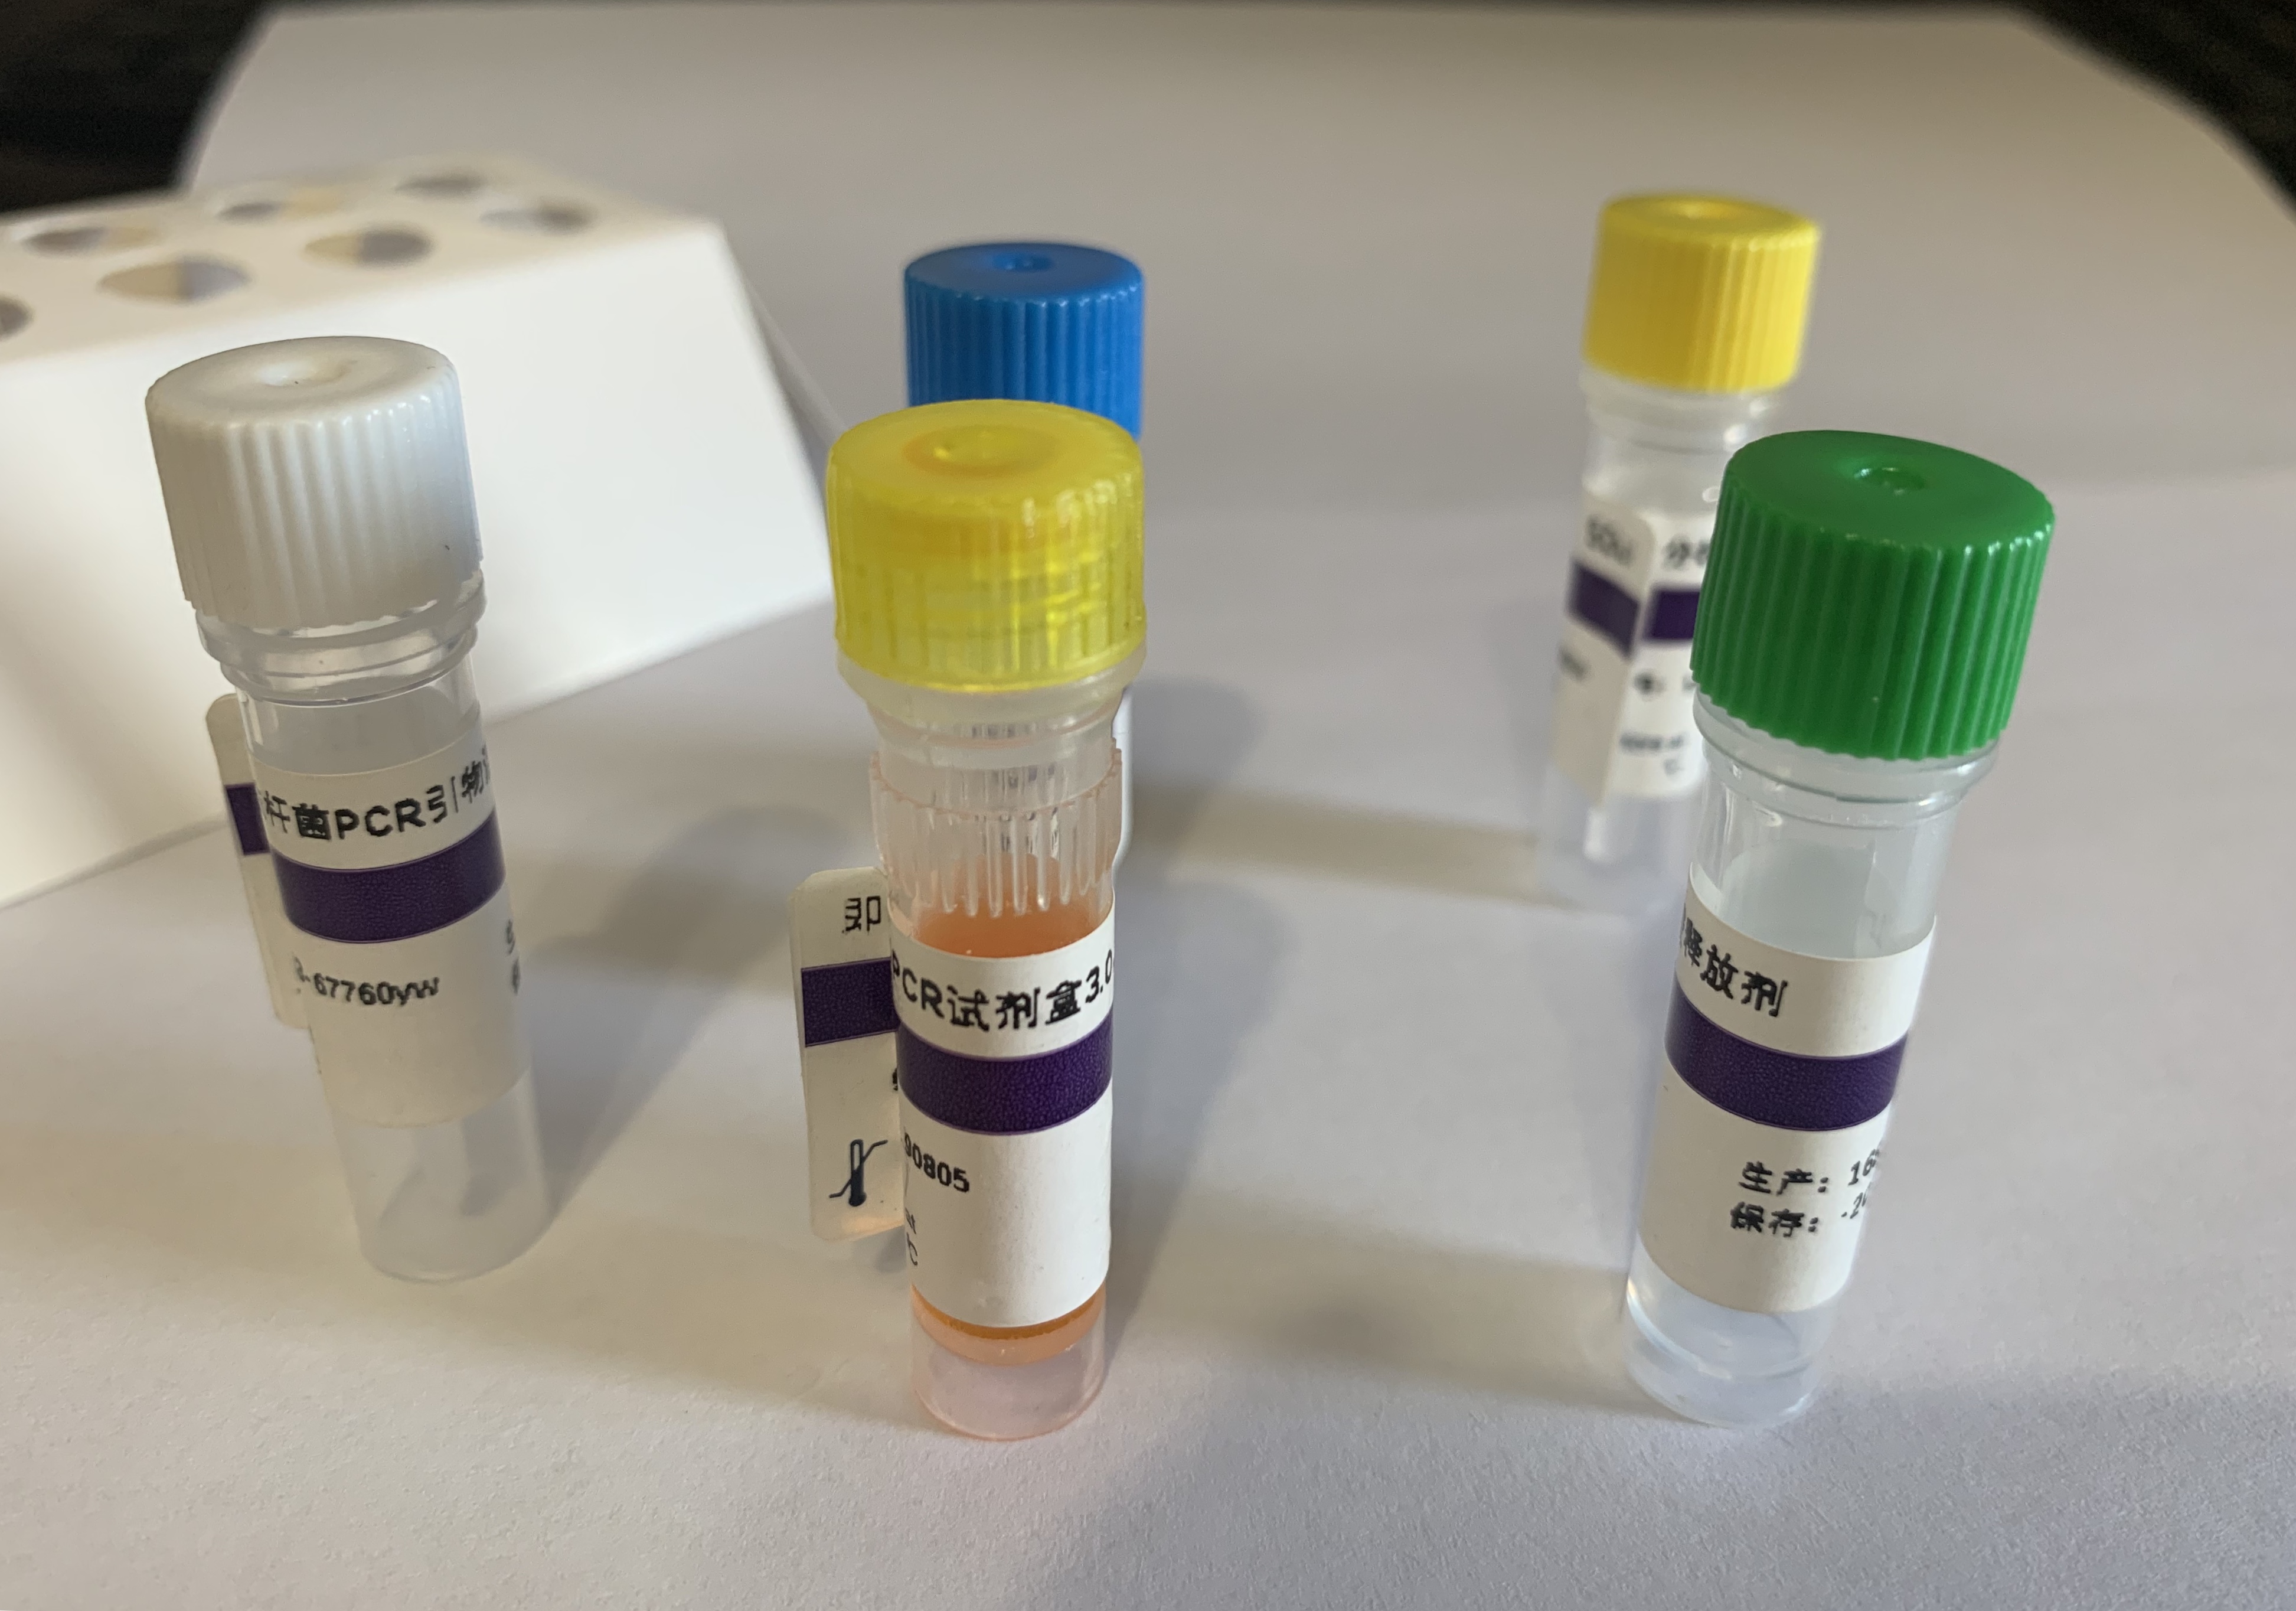 火鸡疱疹病毒探针法荧光定量PCR试剂盒